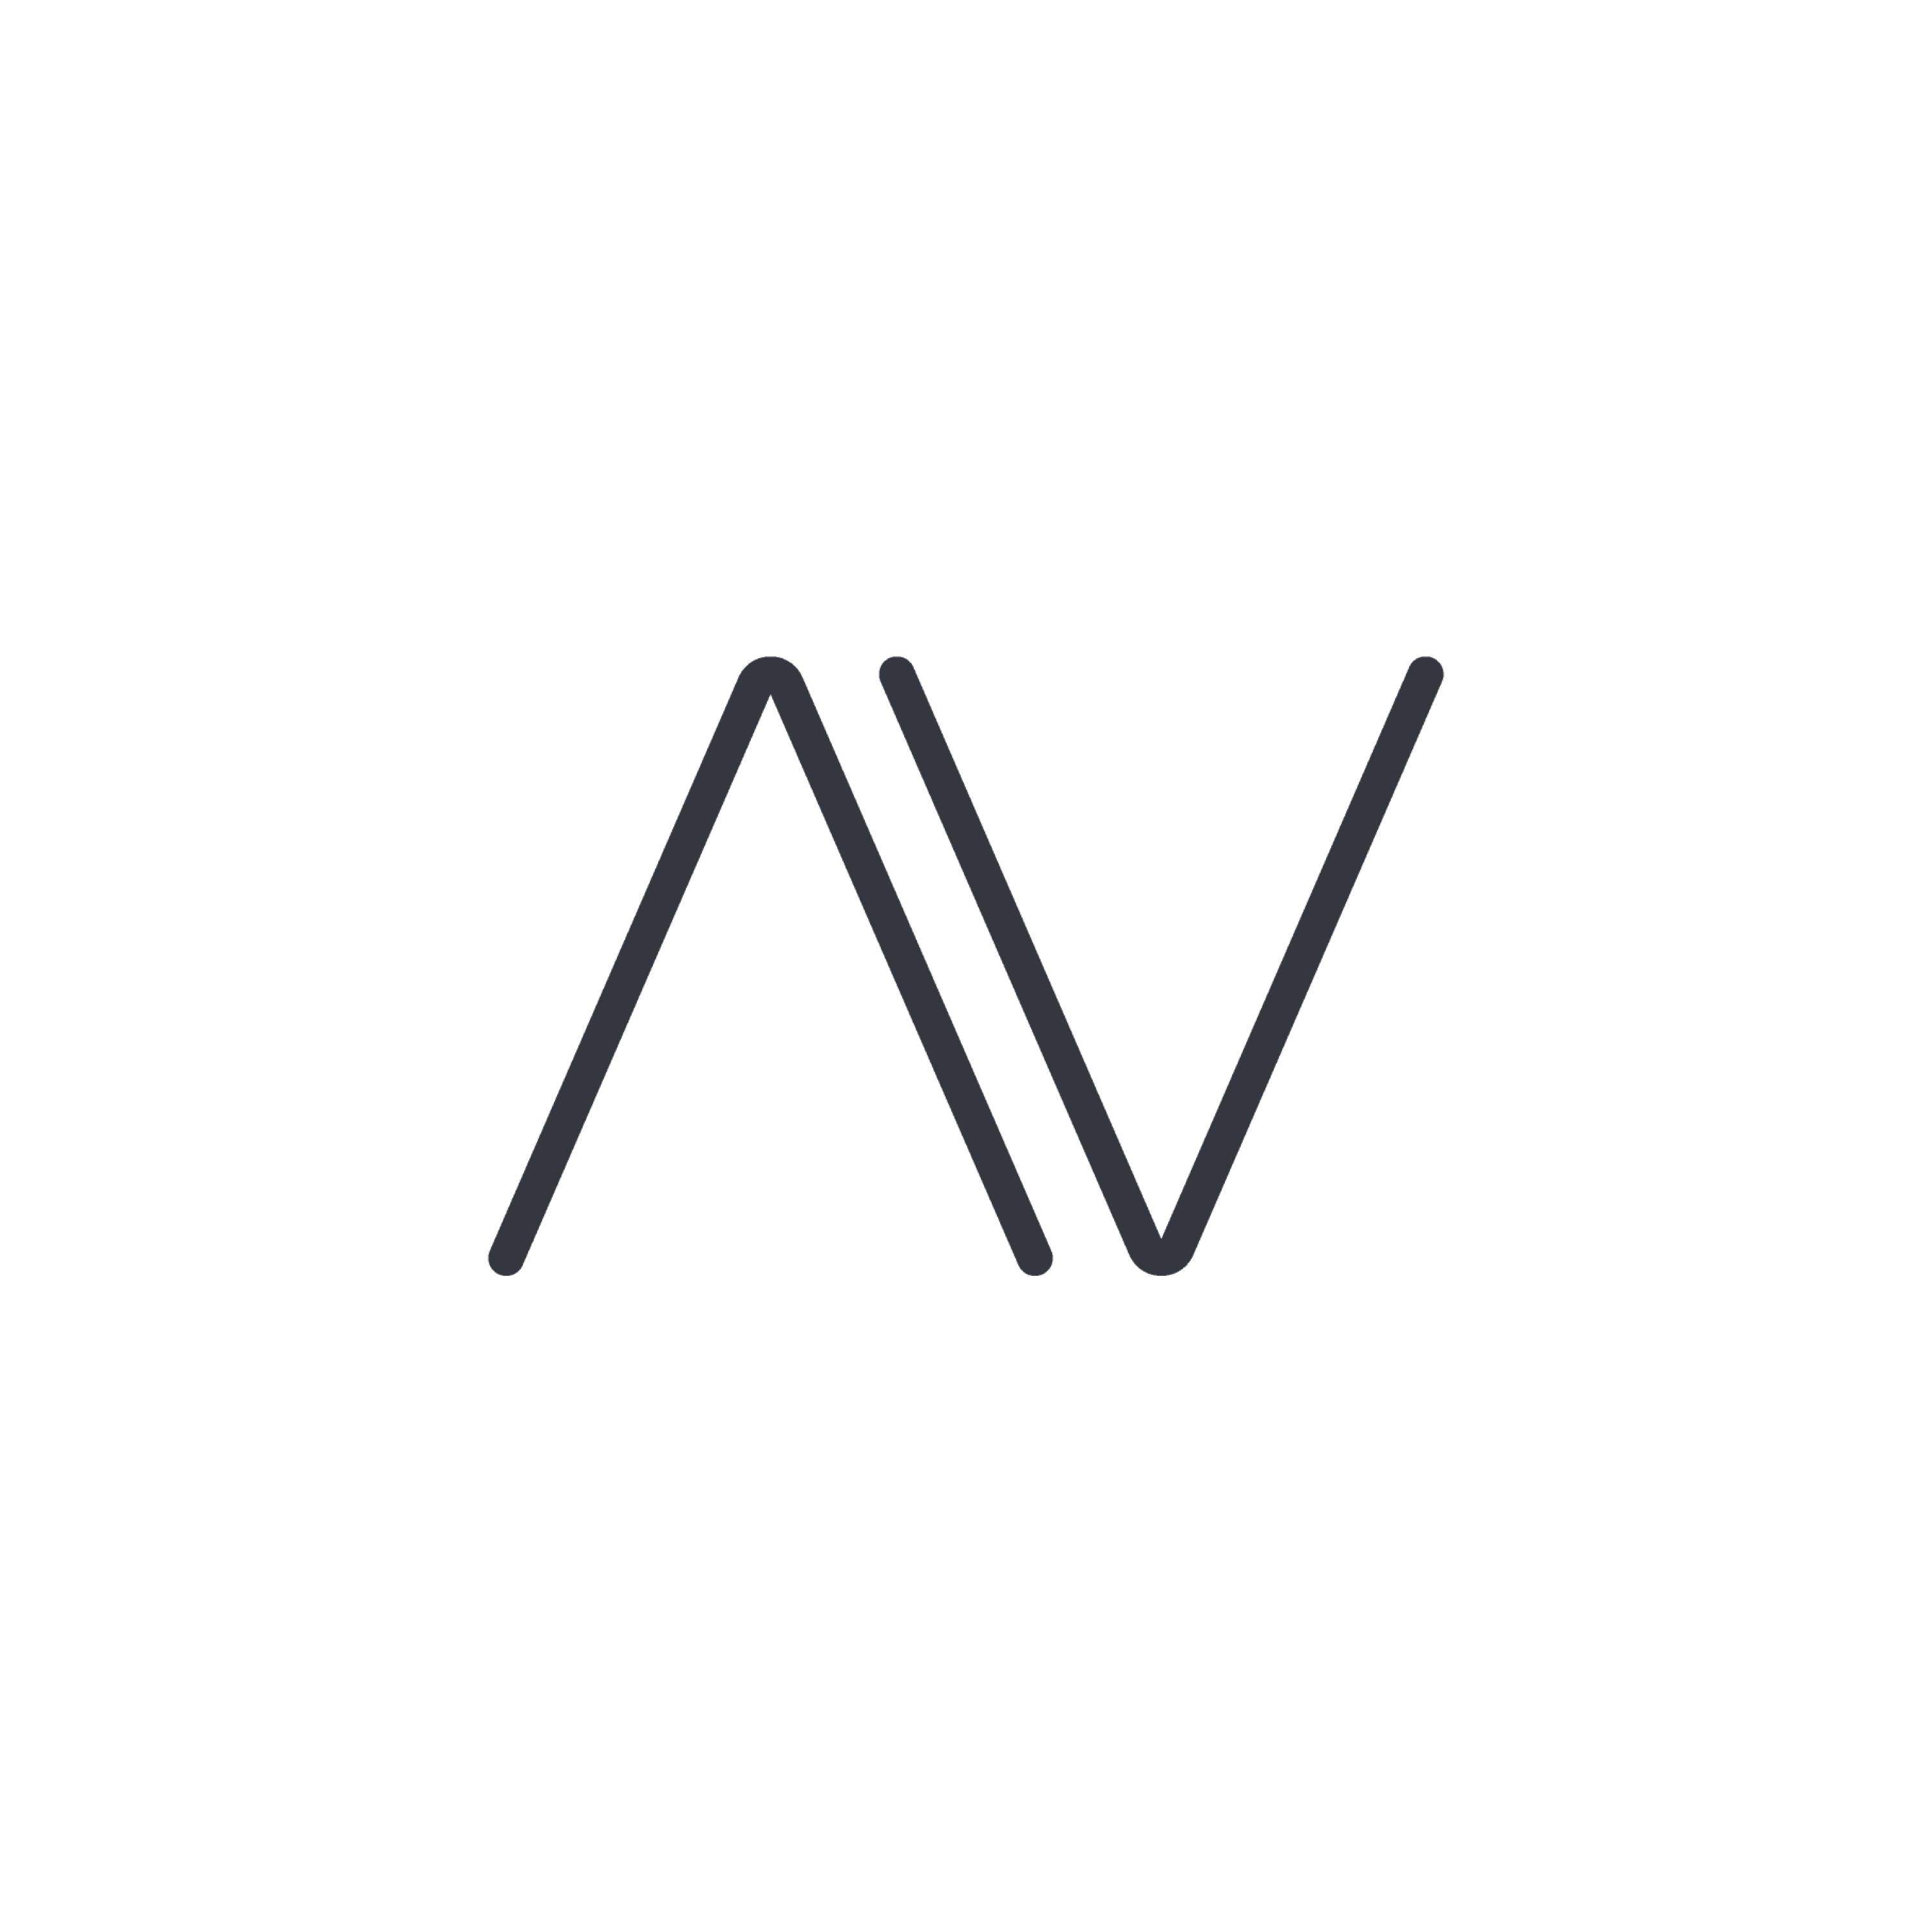 AV Restaurant Berlin logo